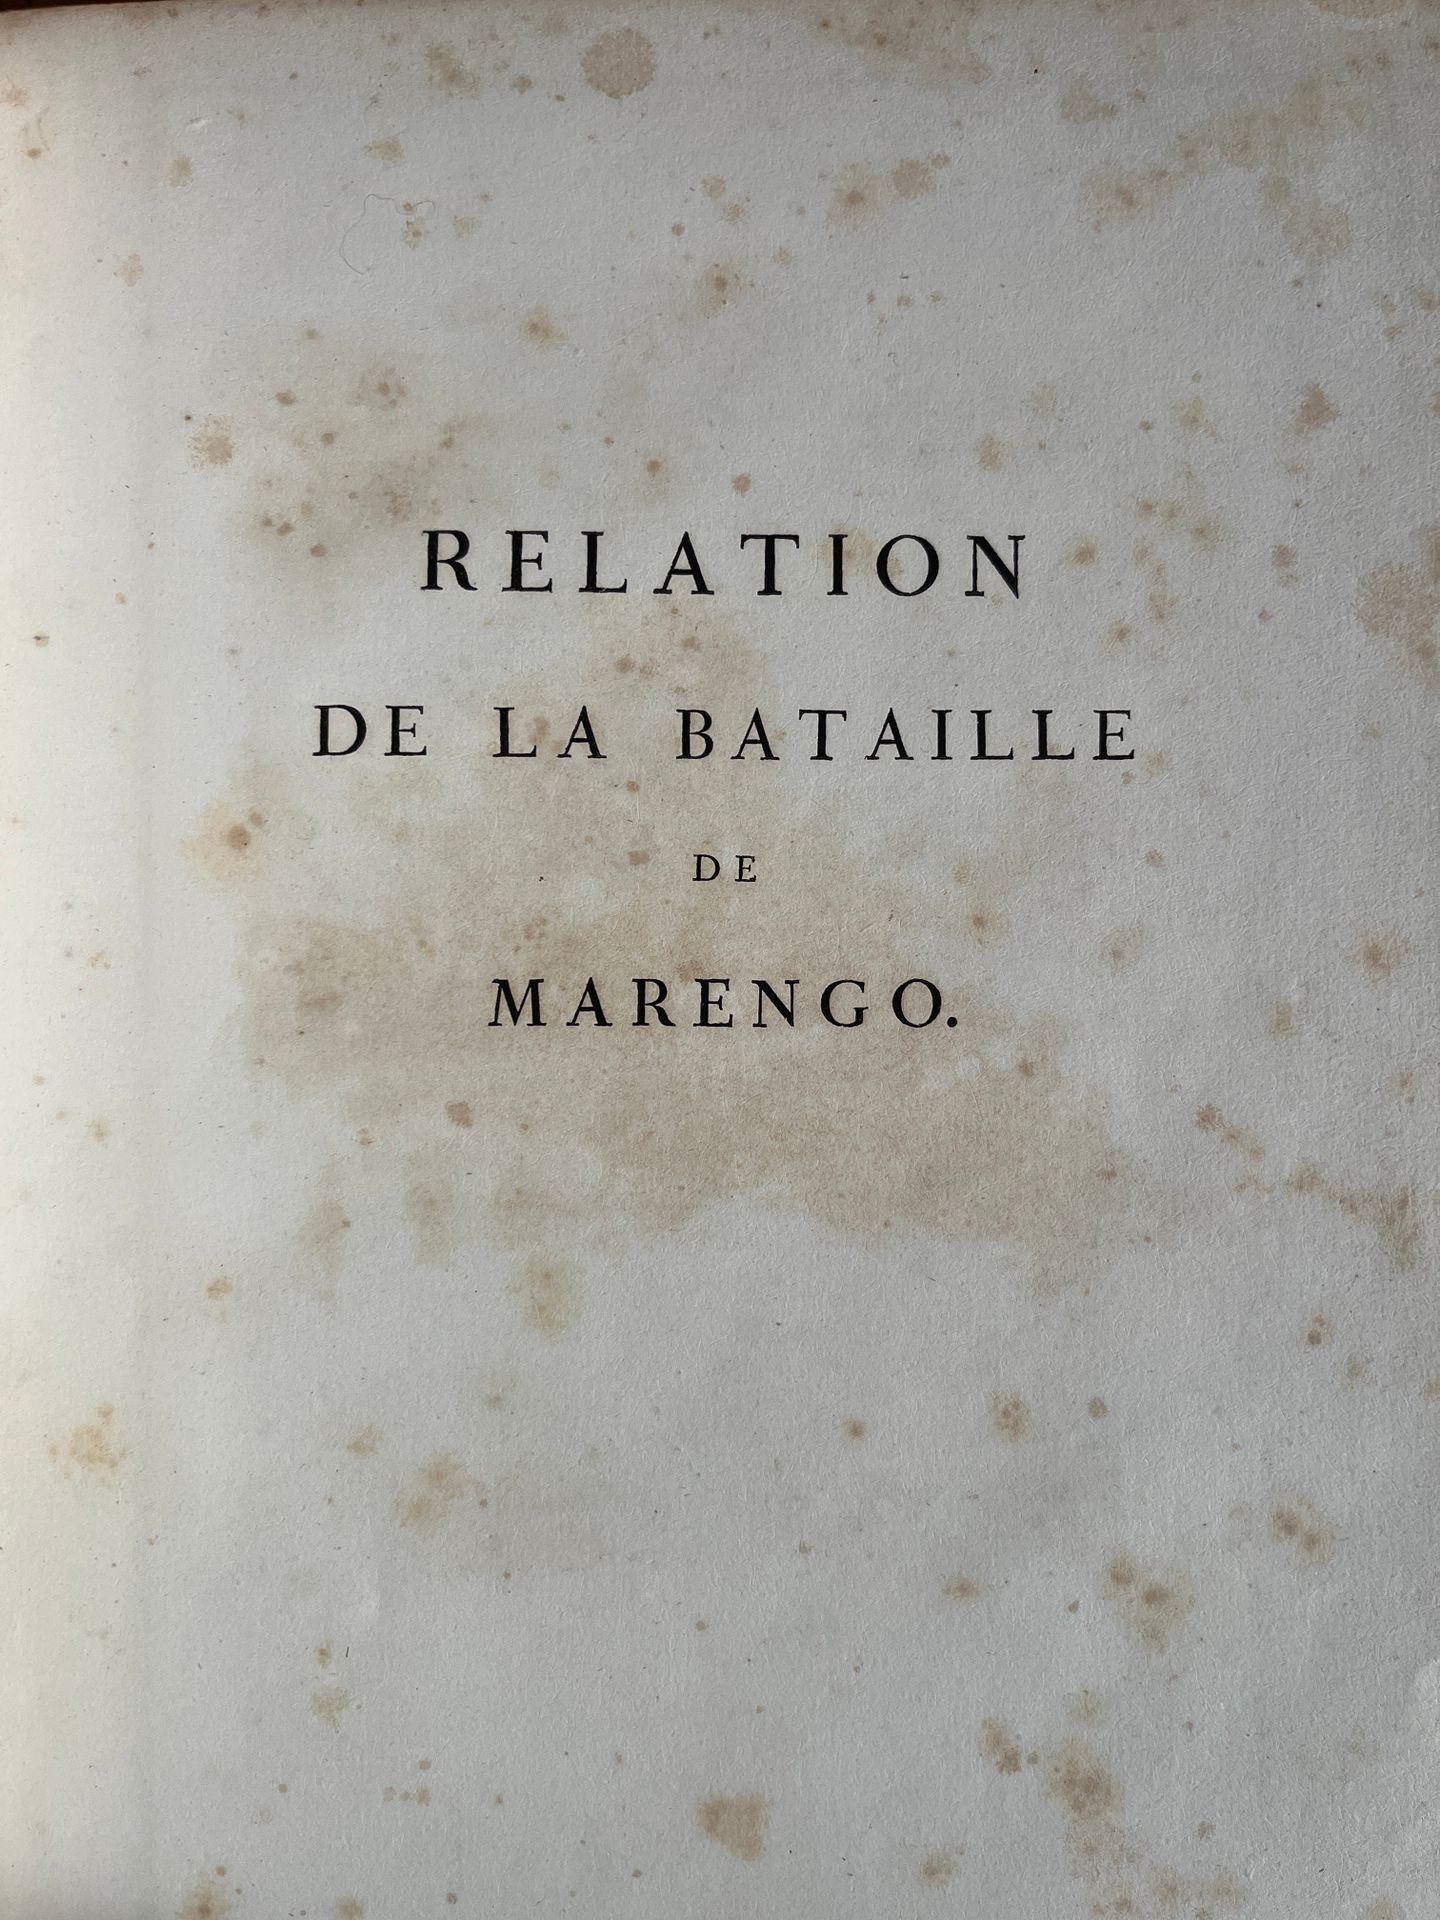 Null [BATALLA]
Relato de la batalla de Marengo. París, por Alex Berthier 1806.
I&hellip;